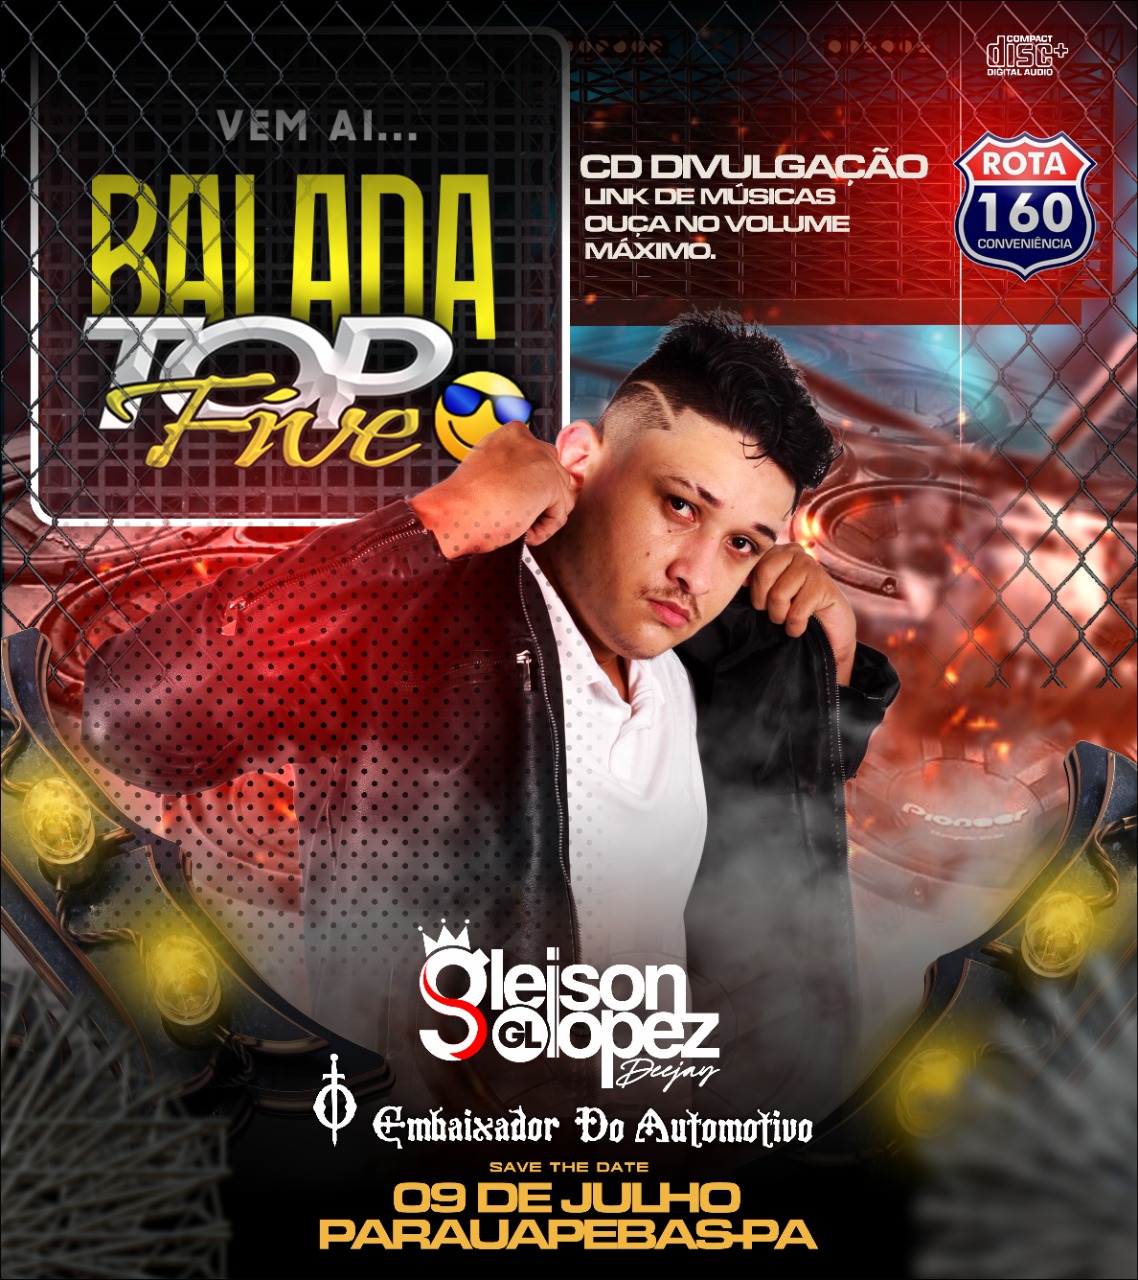 CD DIVULGAÇÃO - BALADA TOP FIVE - Gleison Lopez